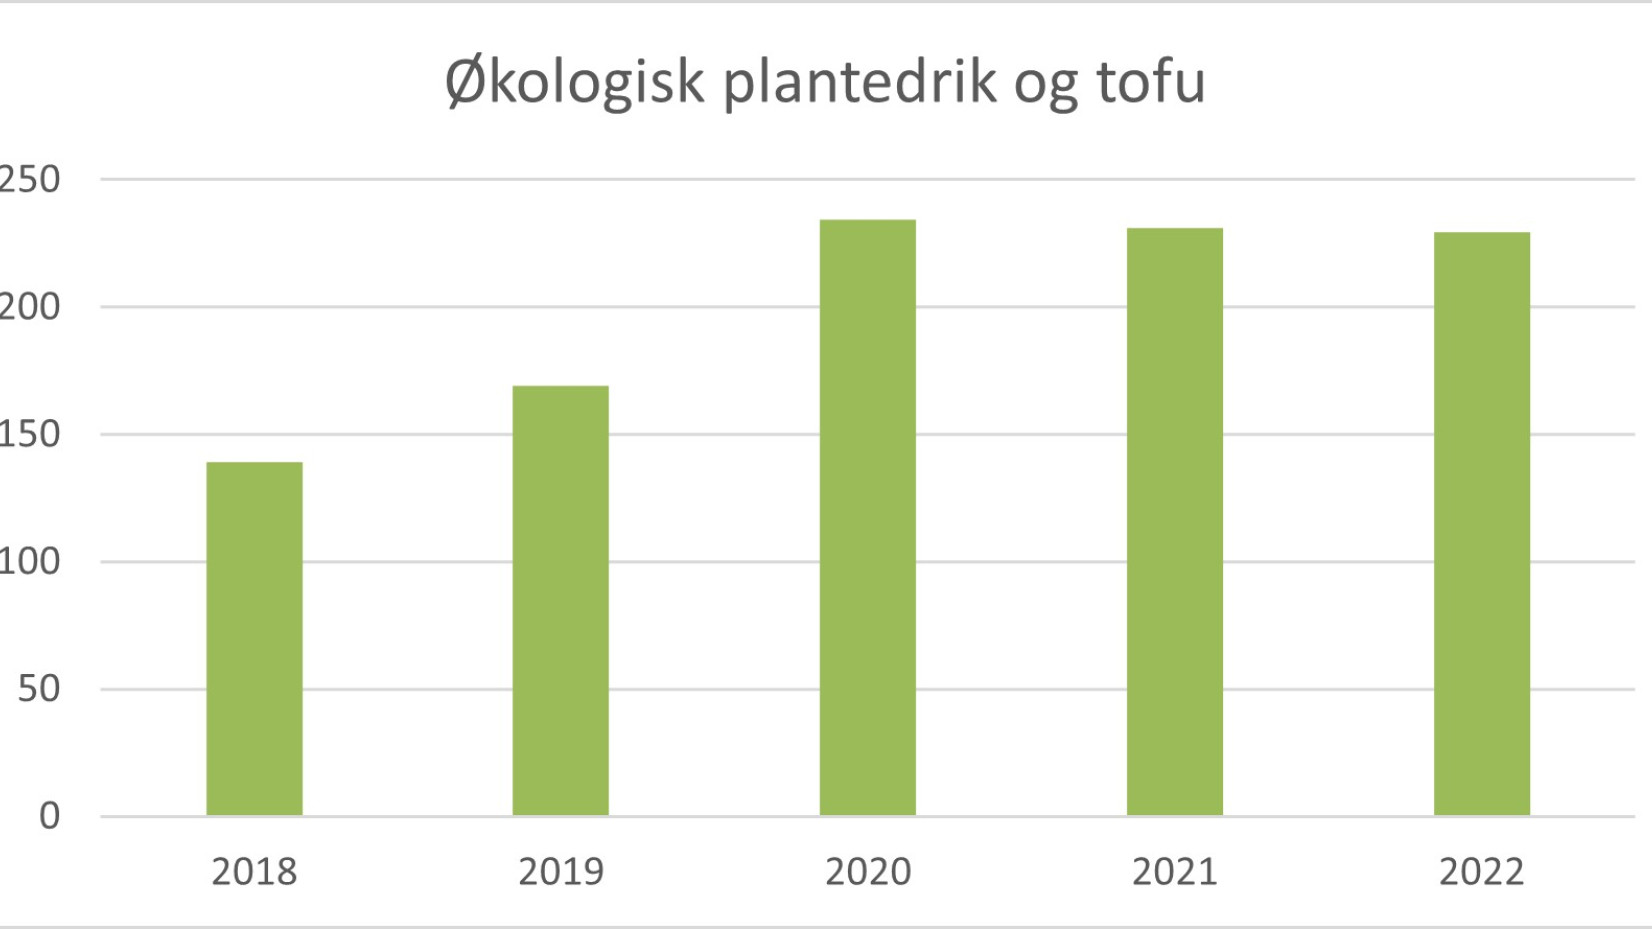 Salget af økologisk plantedrik og tofu i Danmark har ifølge Danmarks Statistik de seneste tre år ligget nogenlunde fast på 230 mio. kr. årligt